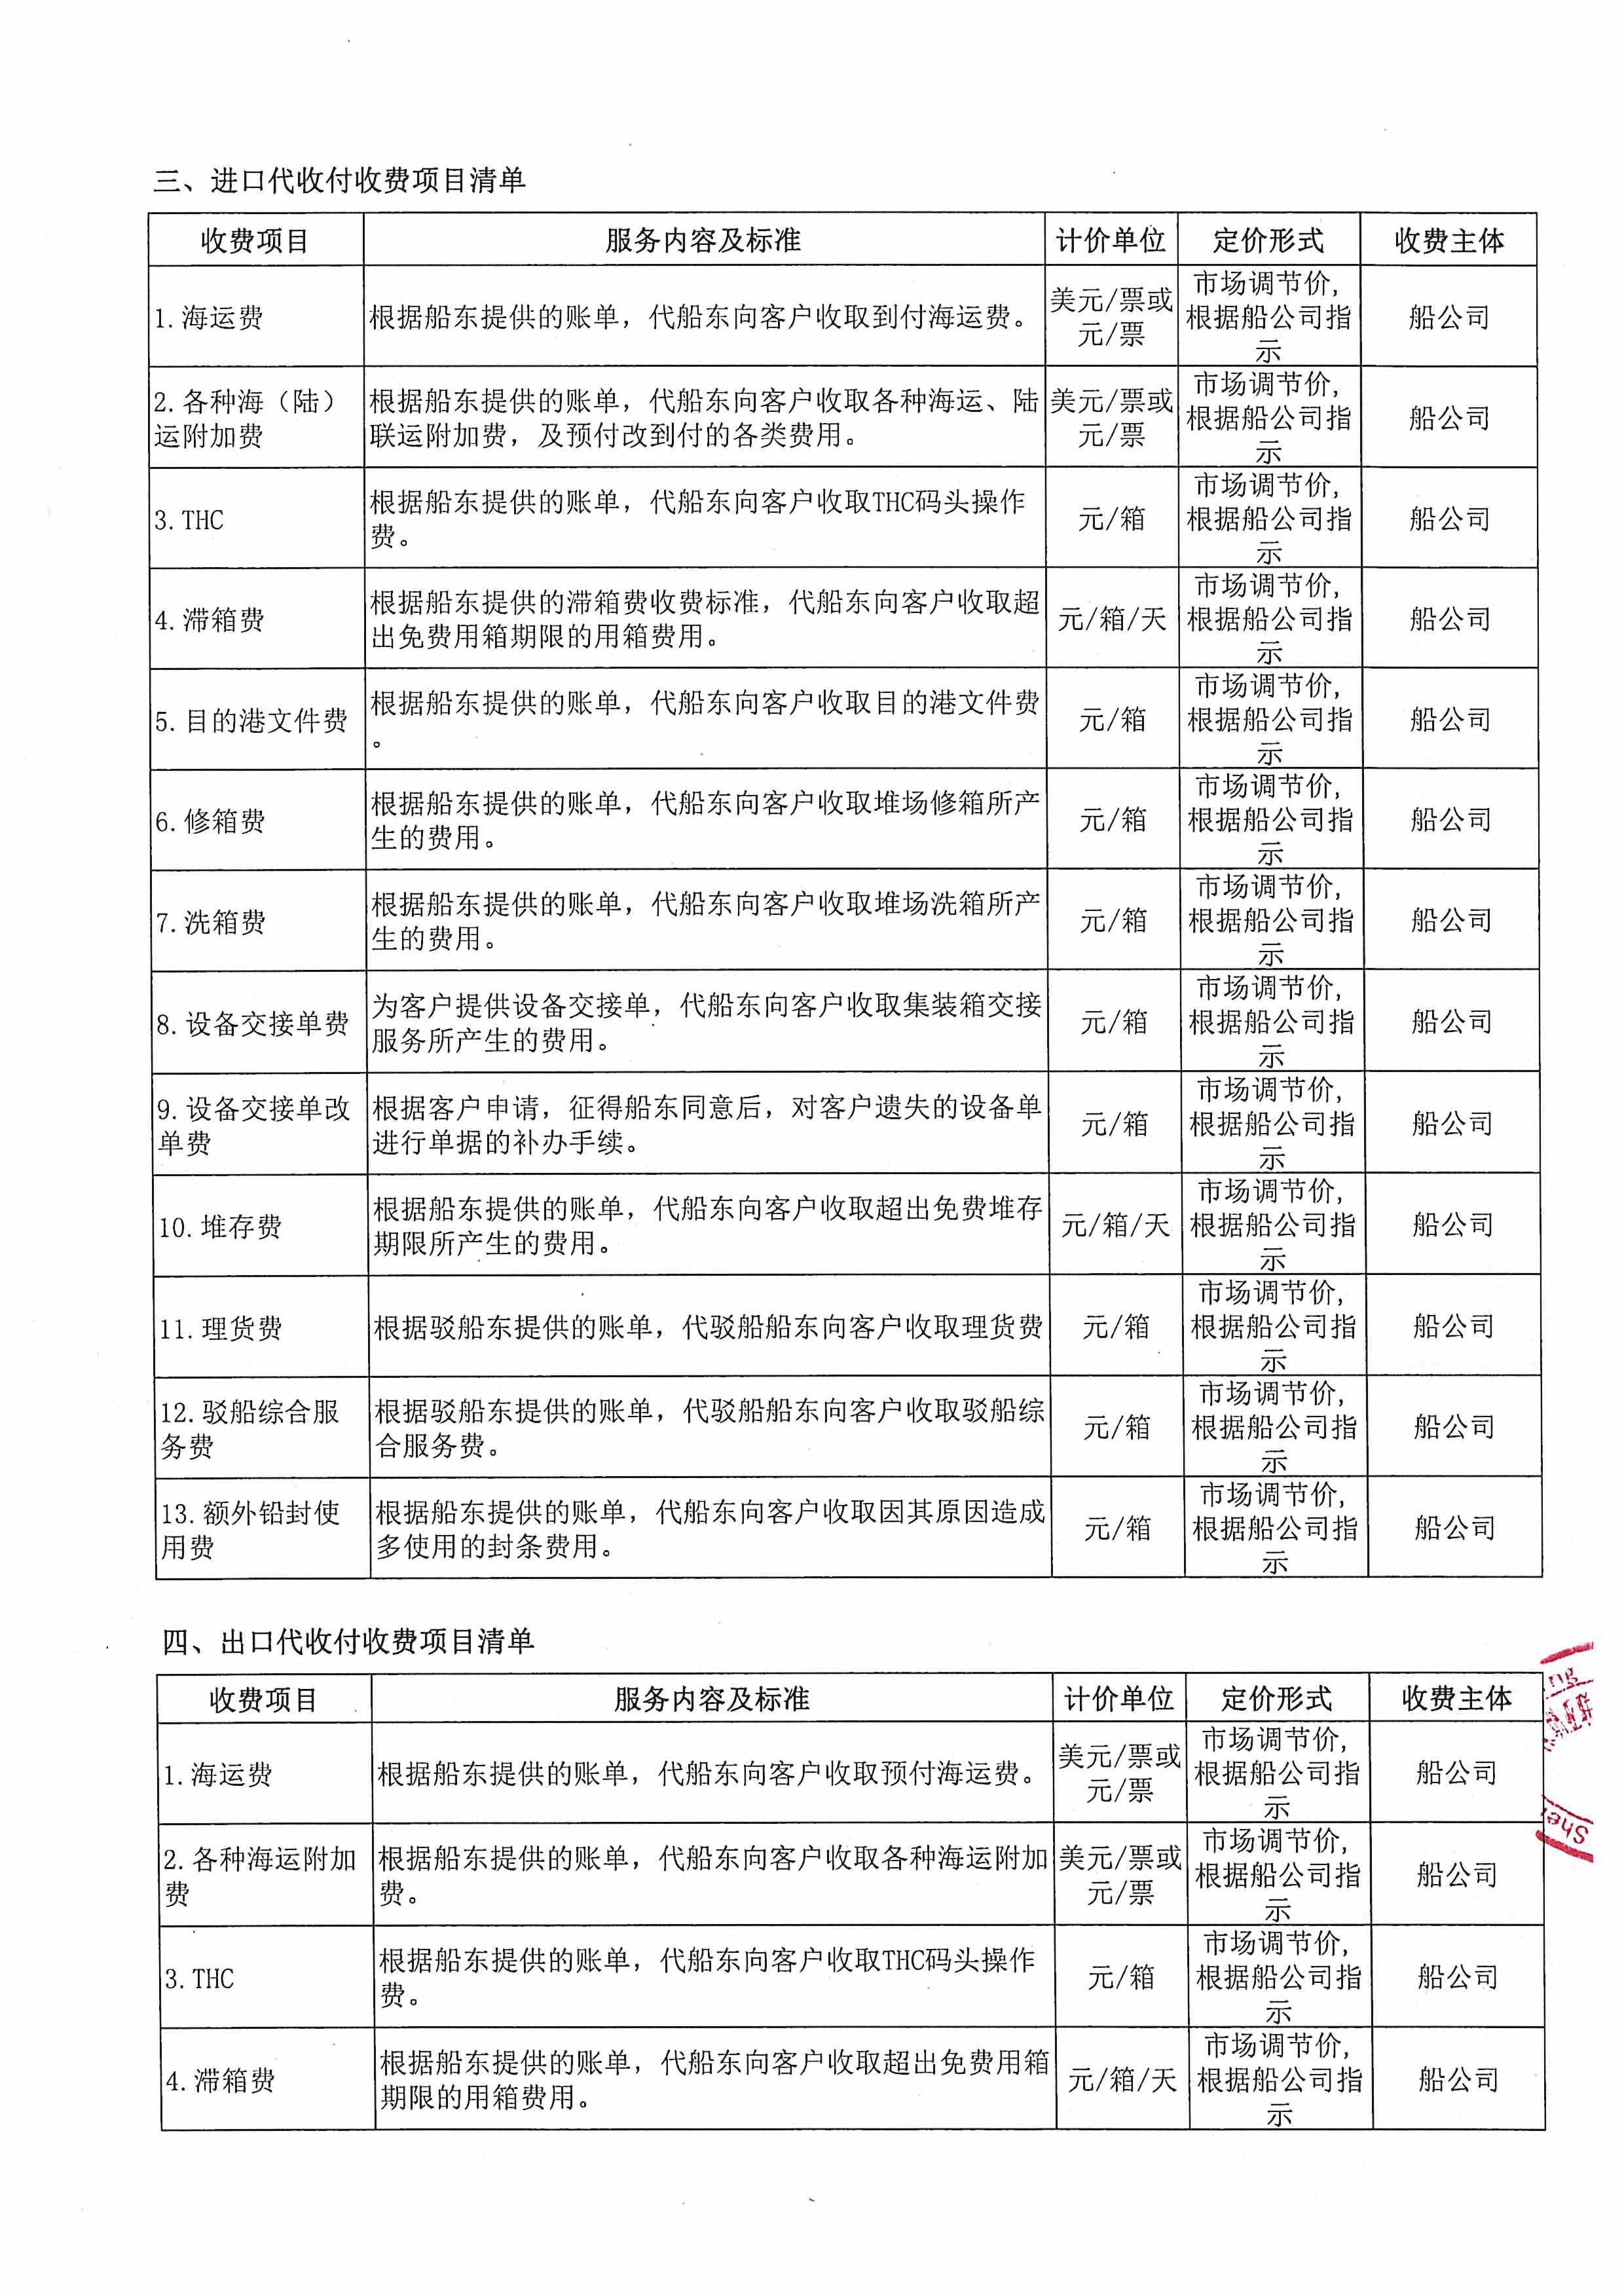 深圳亚联利成富港航服务有限公司收费目录清单_2.jpg